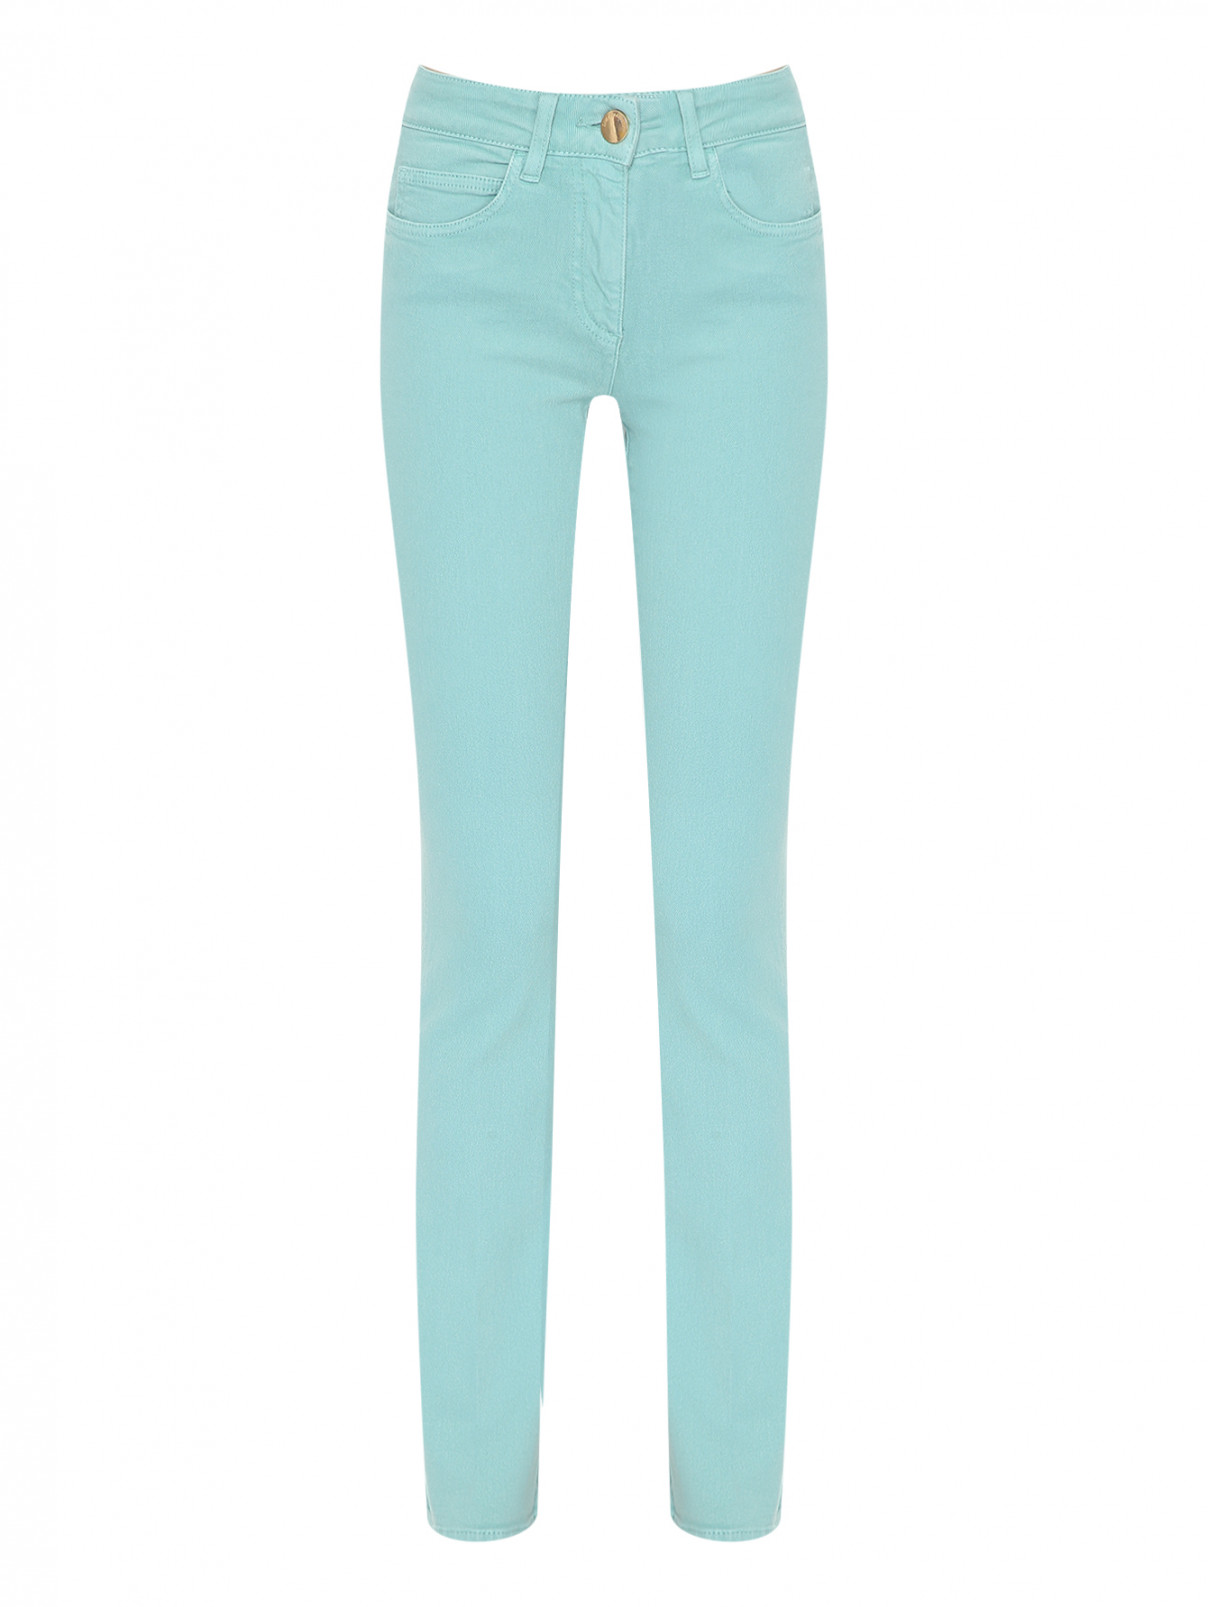 Расклешенные джинсы из хлопка Luisa Spagnoli  –  Общий вид  – Цвет:  Зеленый